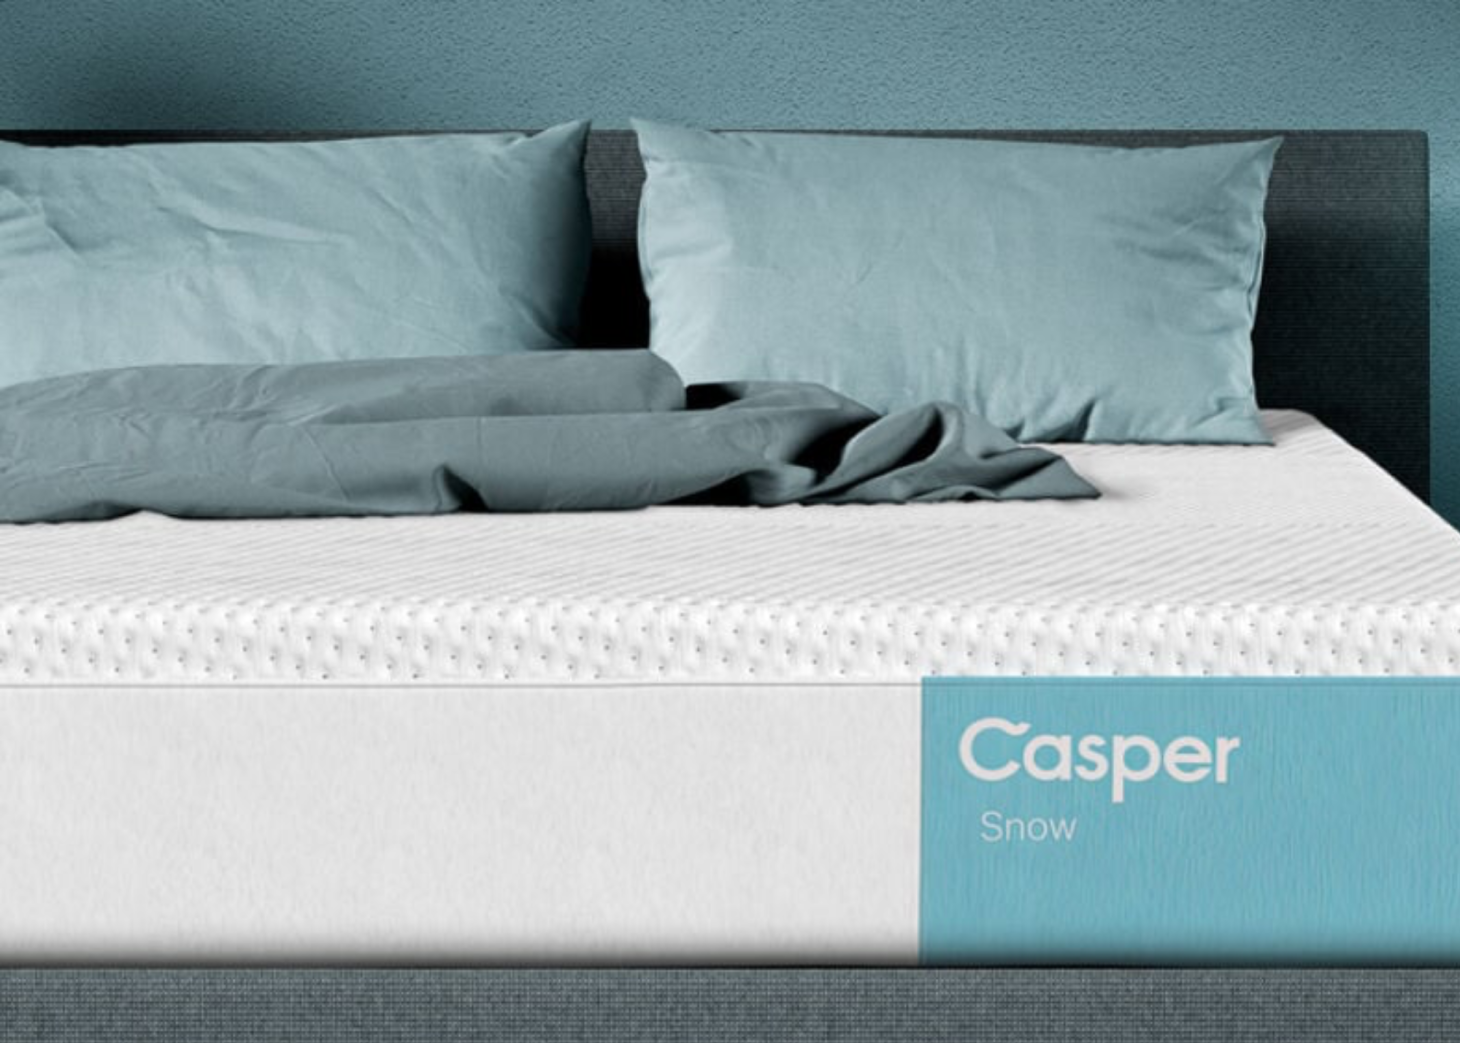 Casper Snow Cooling Hybrid Mattress